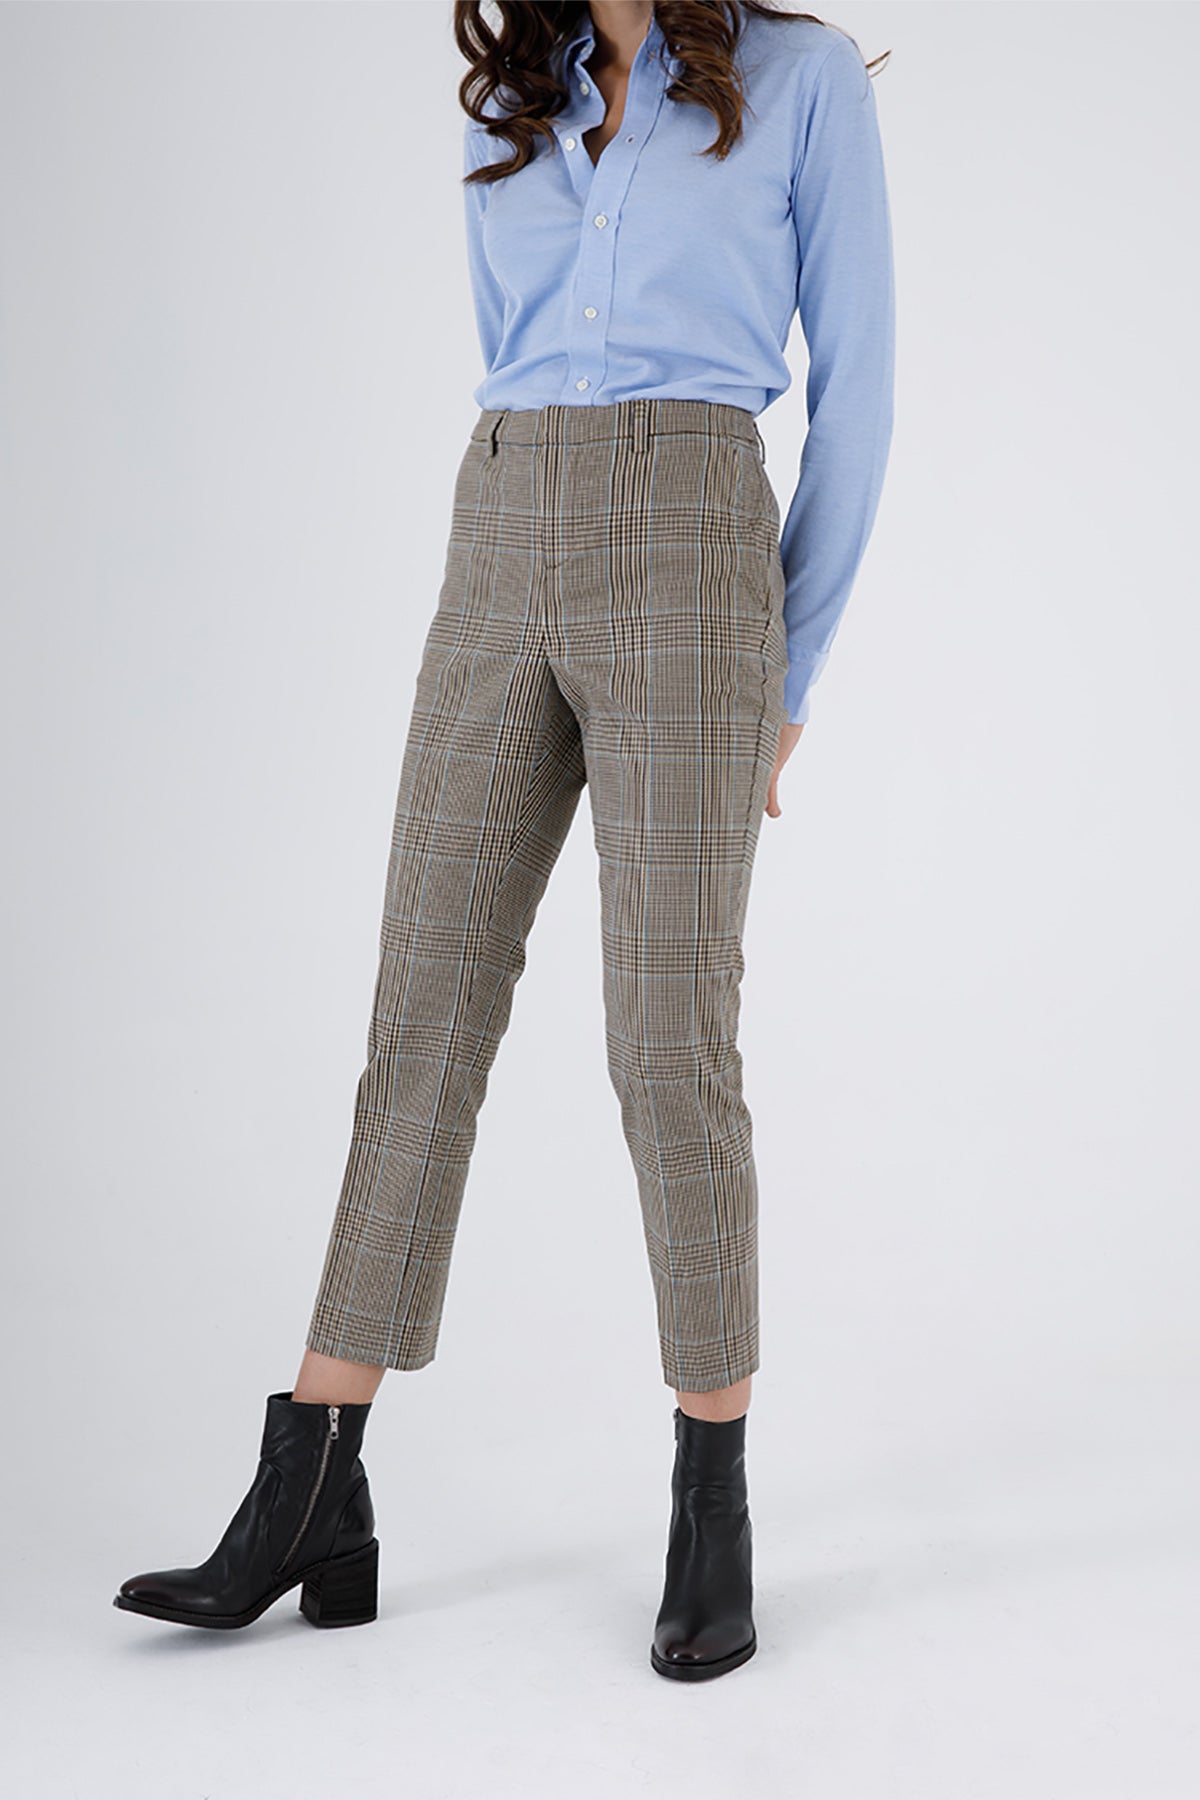 Polo Ralph Lauren Piye Dö Pul Pantolon-Libas Trendy Fashion Store